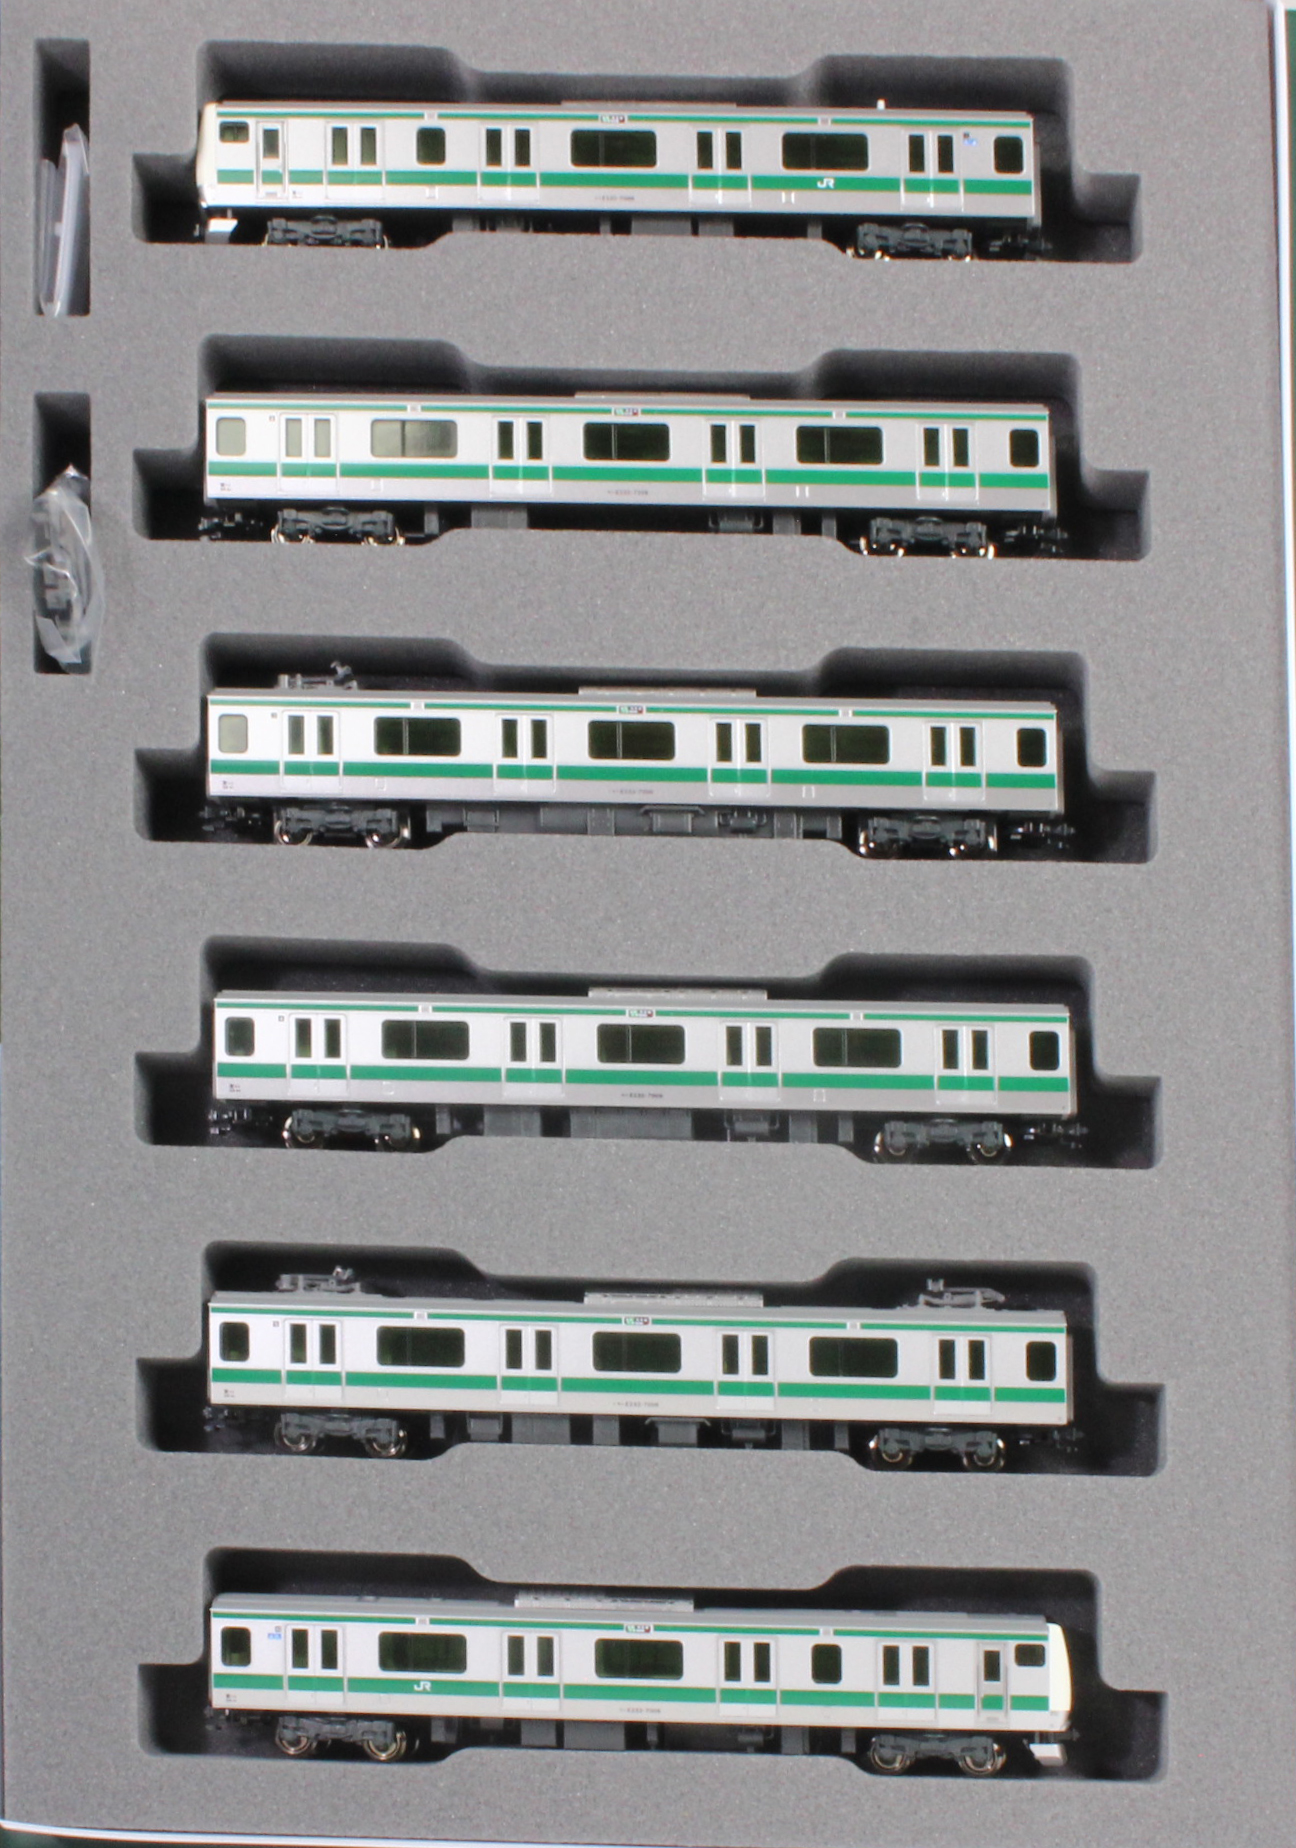 カトー 10-1630 E233系7000番台 埼京線 基本6両セット Nゲージ | 鉄道 